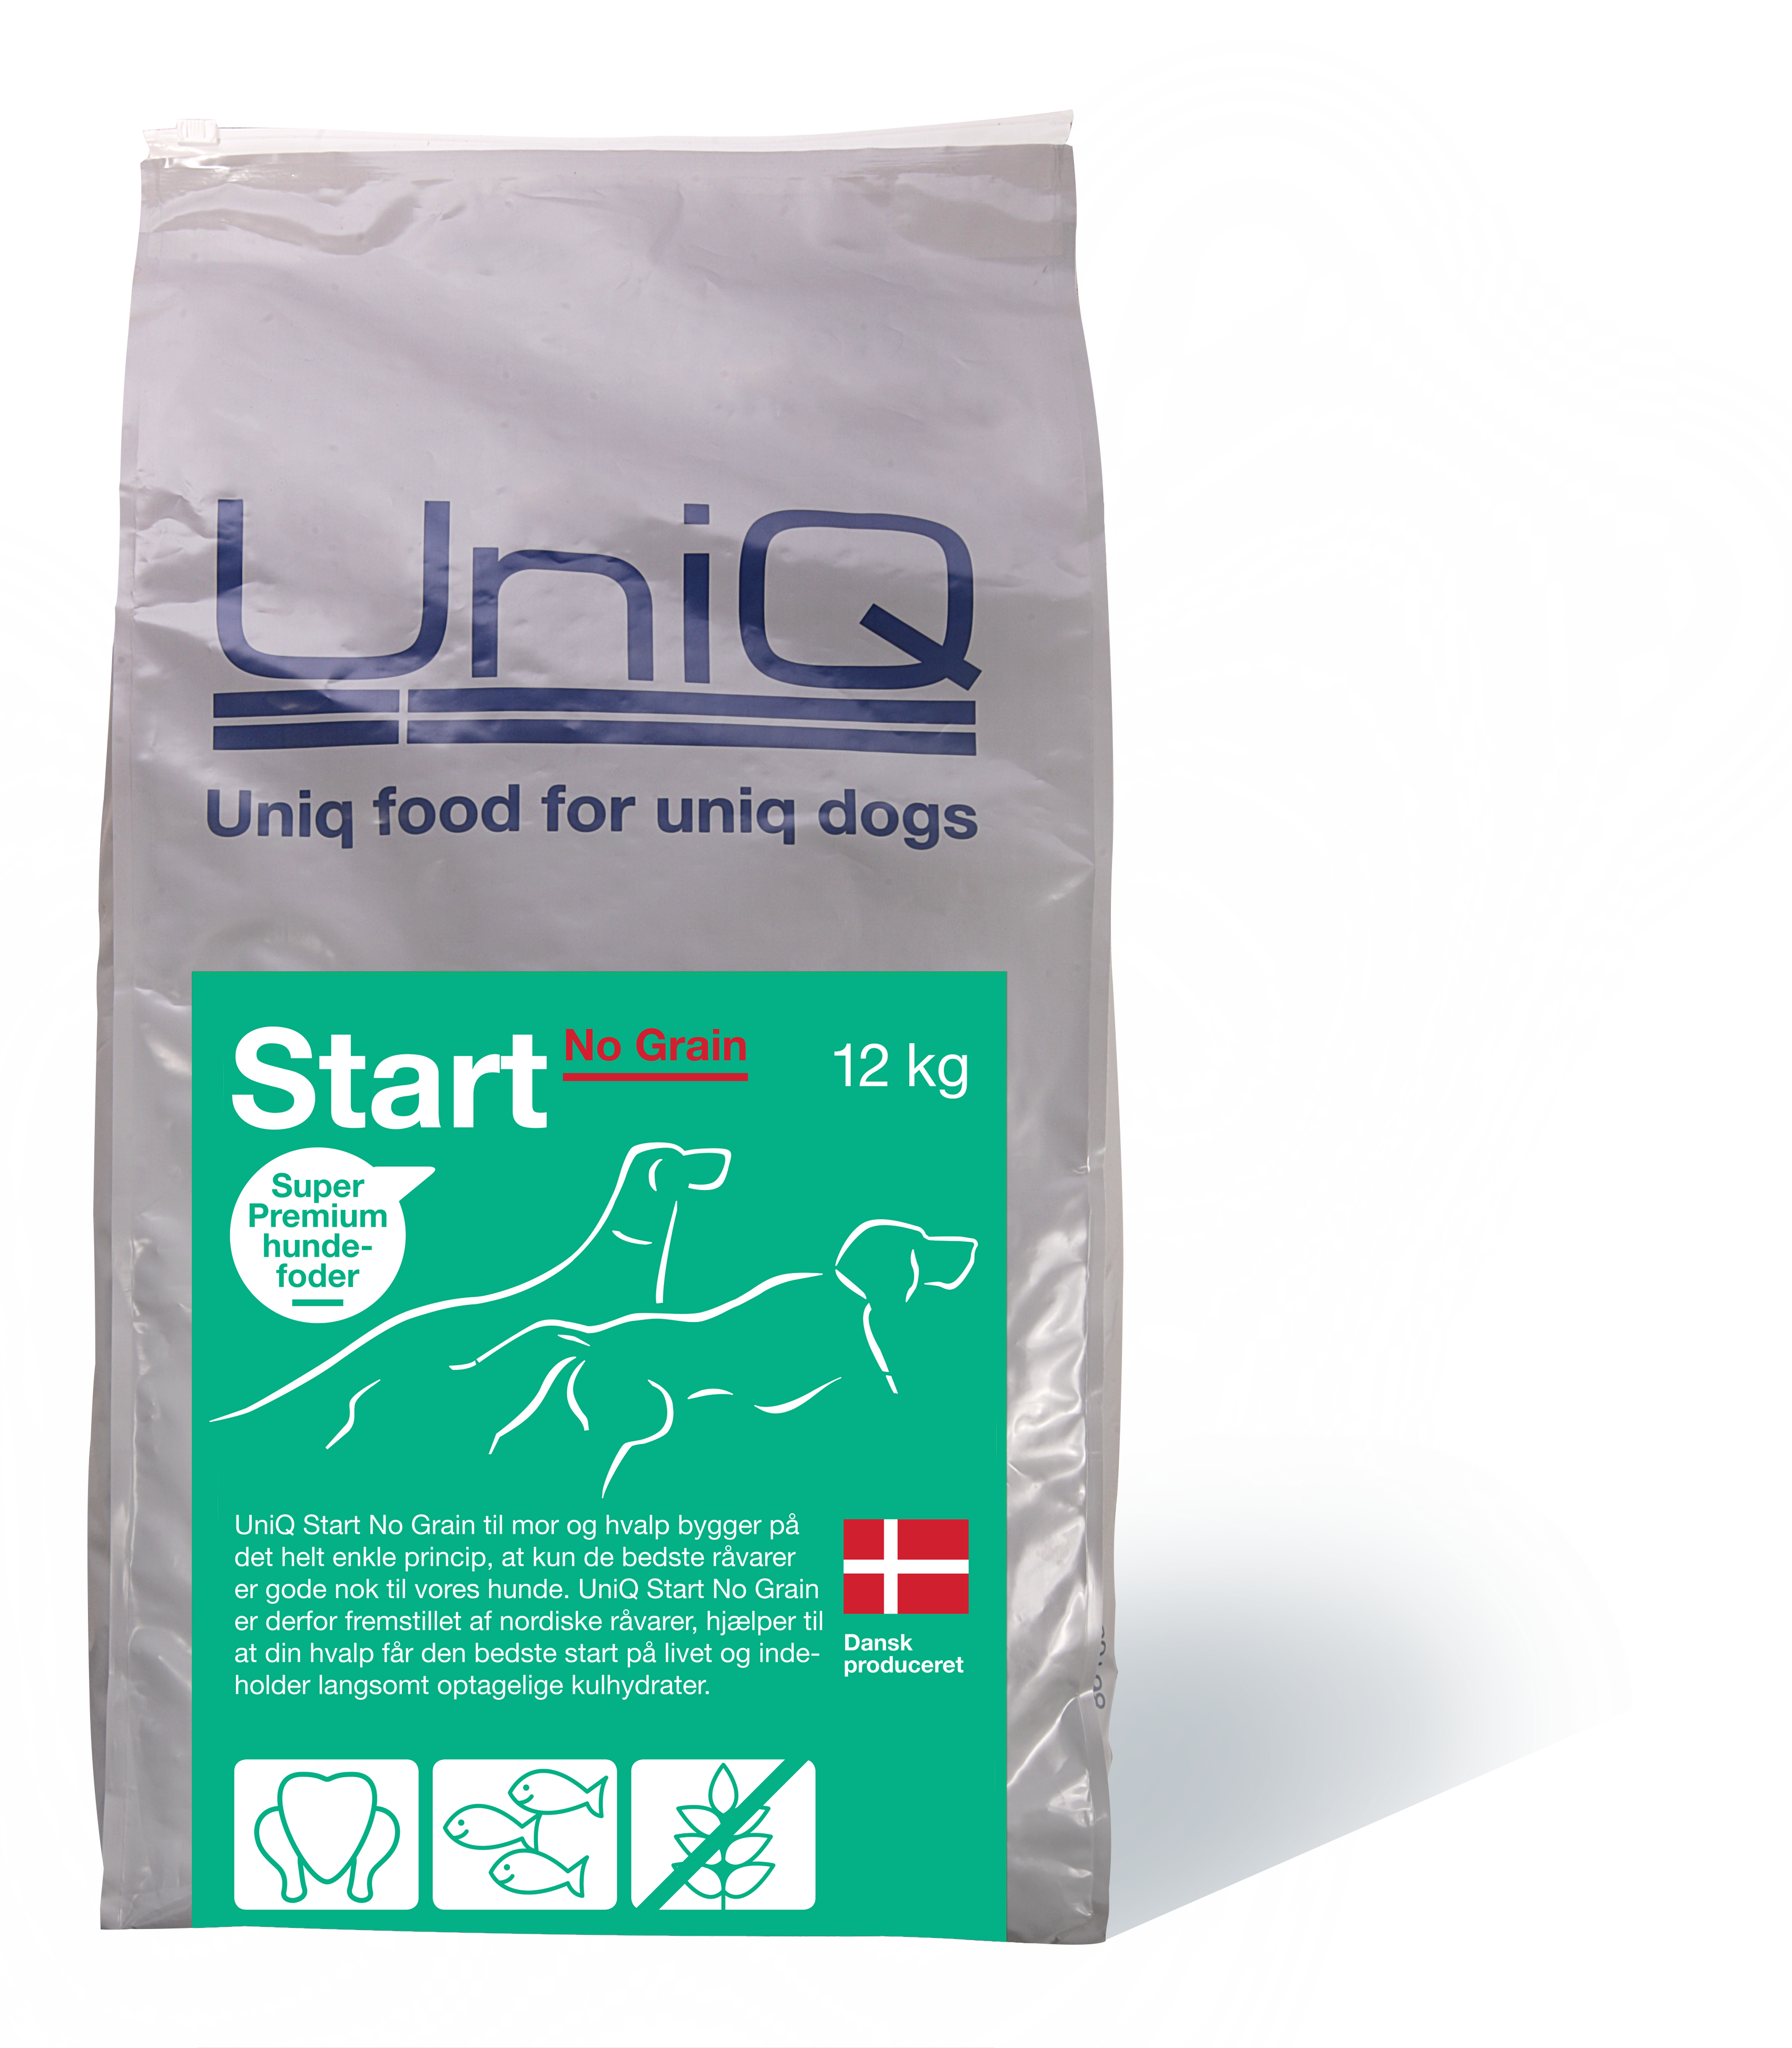 UniQ Start No Grain - UniQ Professionel Dansk